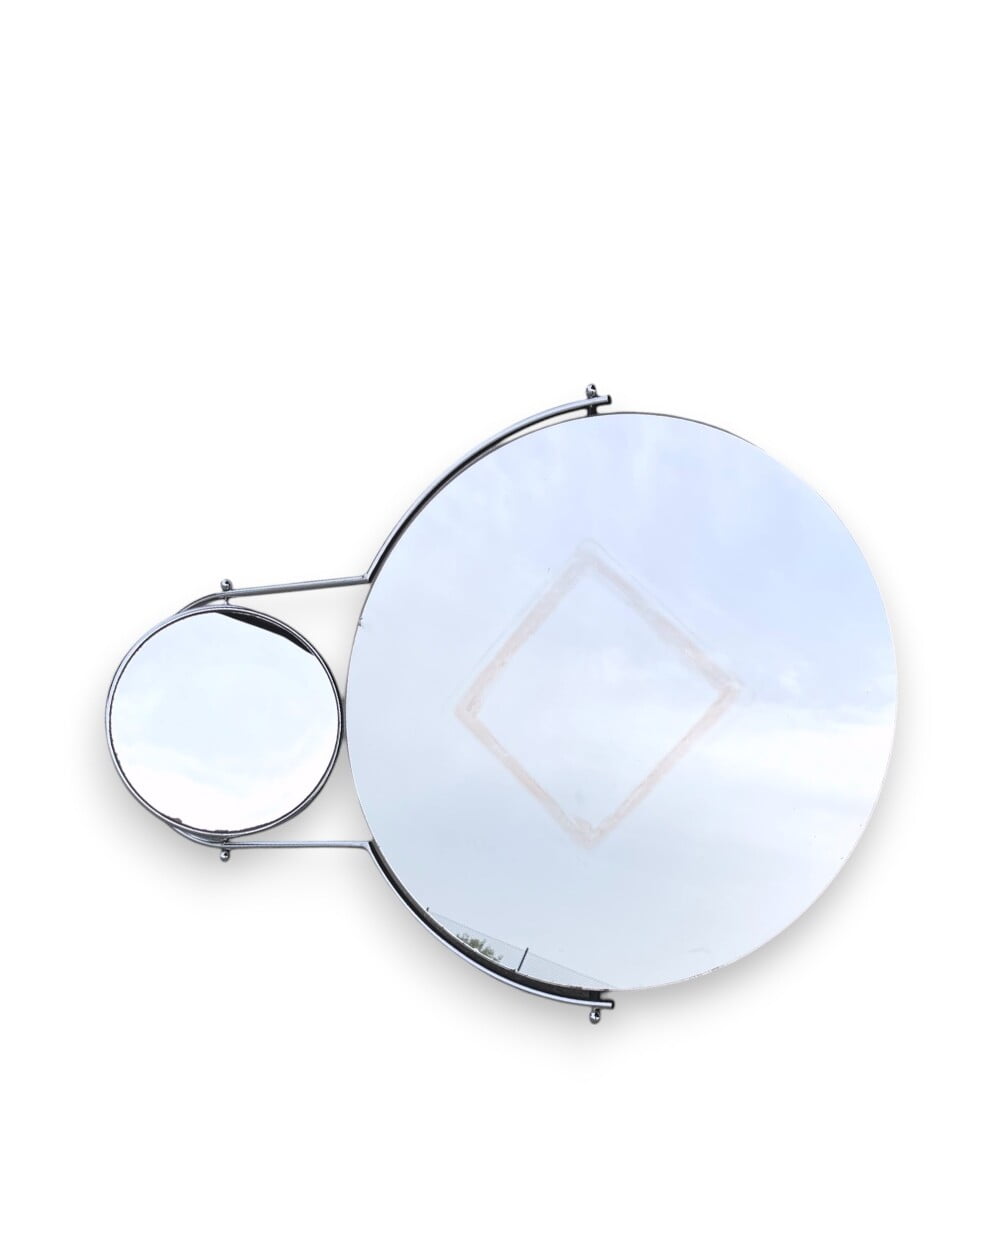 Specchio-Orbit-Bieffeplast